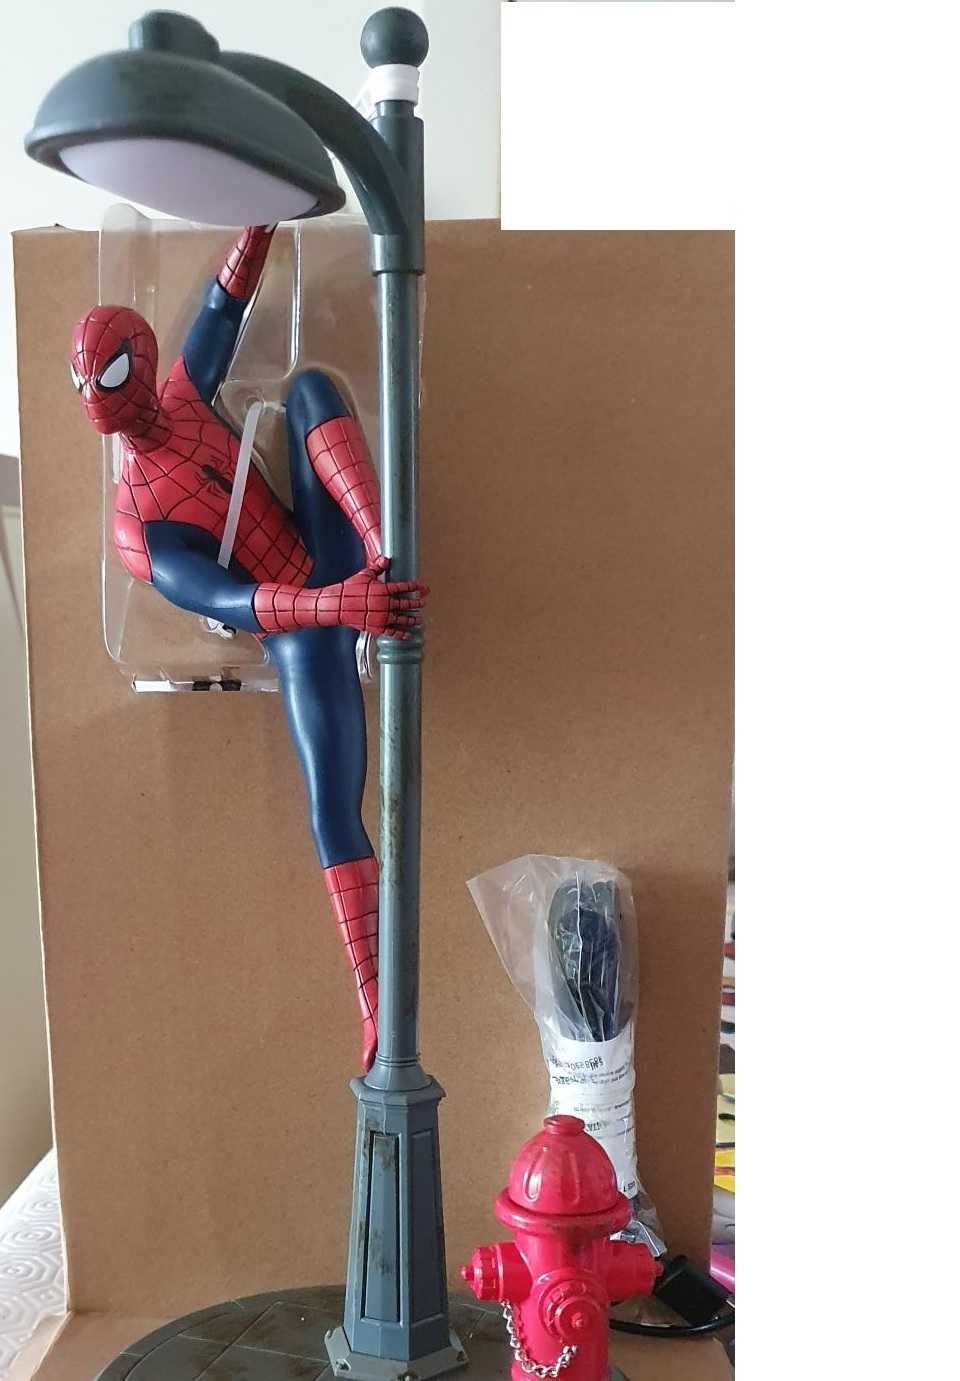 Candeeiro Spiderman (Homem-Aranha) da Paladone